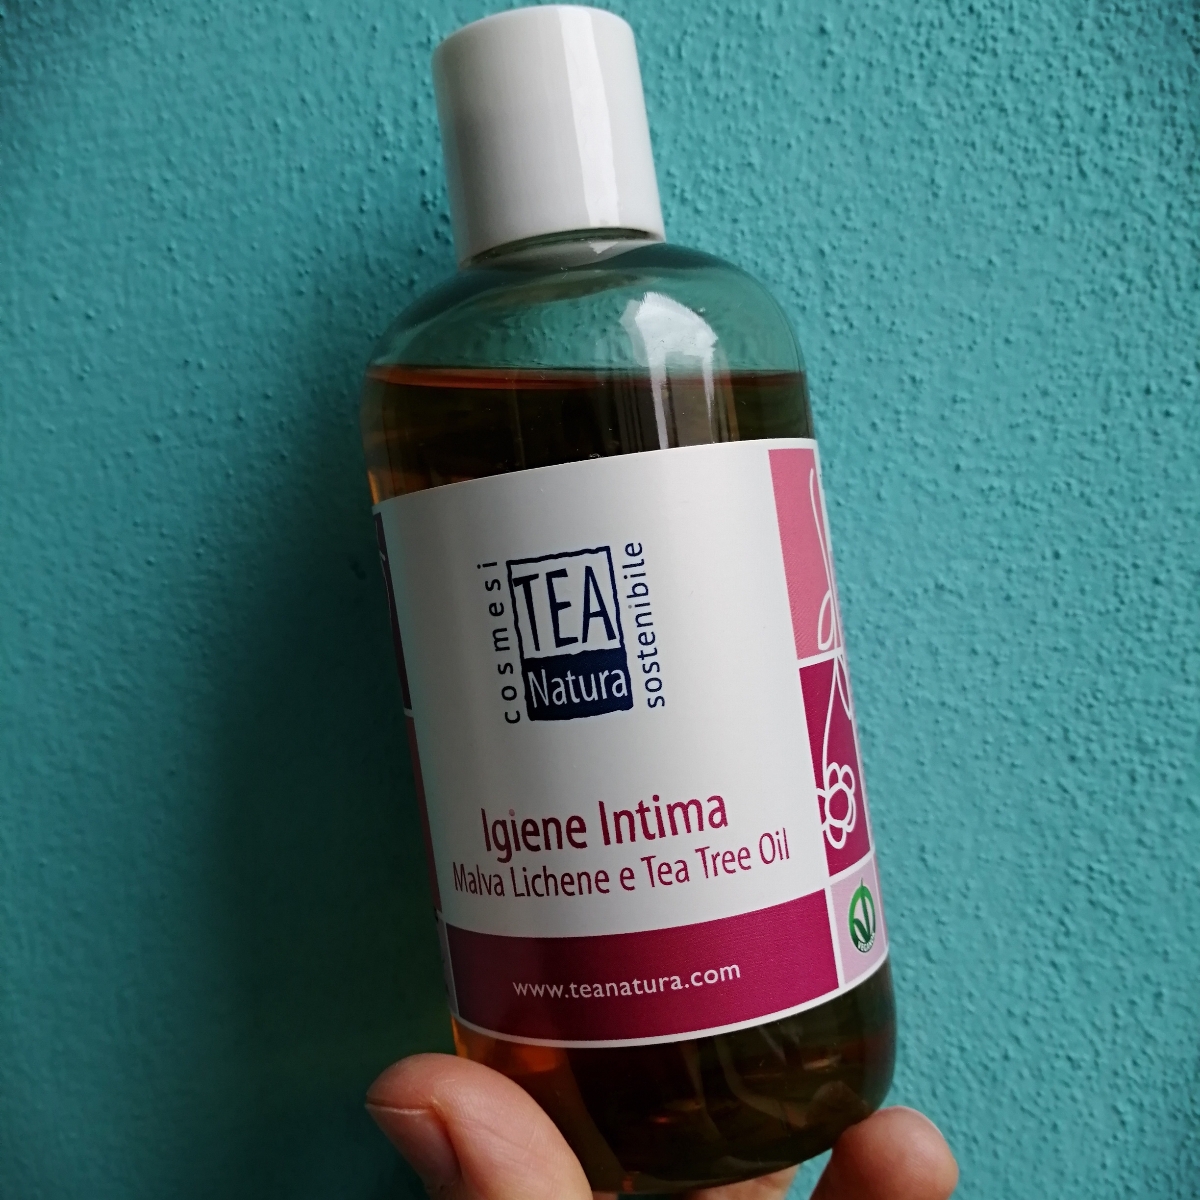 Tea Natura Igiene intima. Malva Lichene e Tea Tree Oil Reviews | abillion